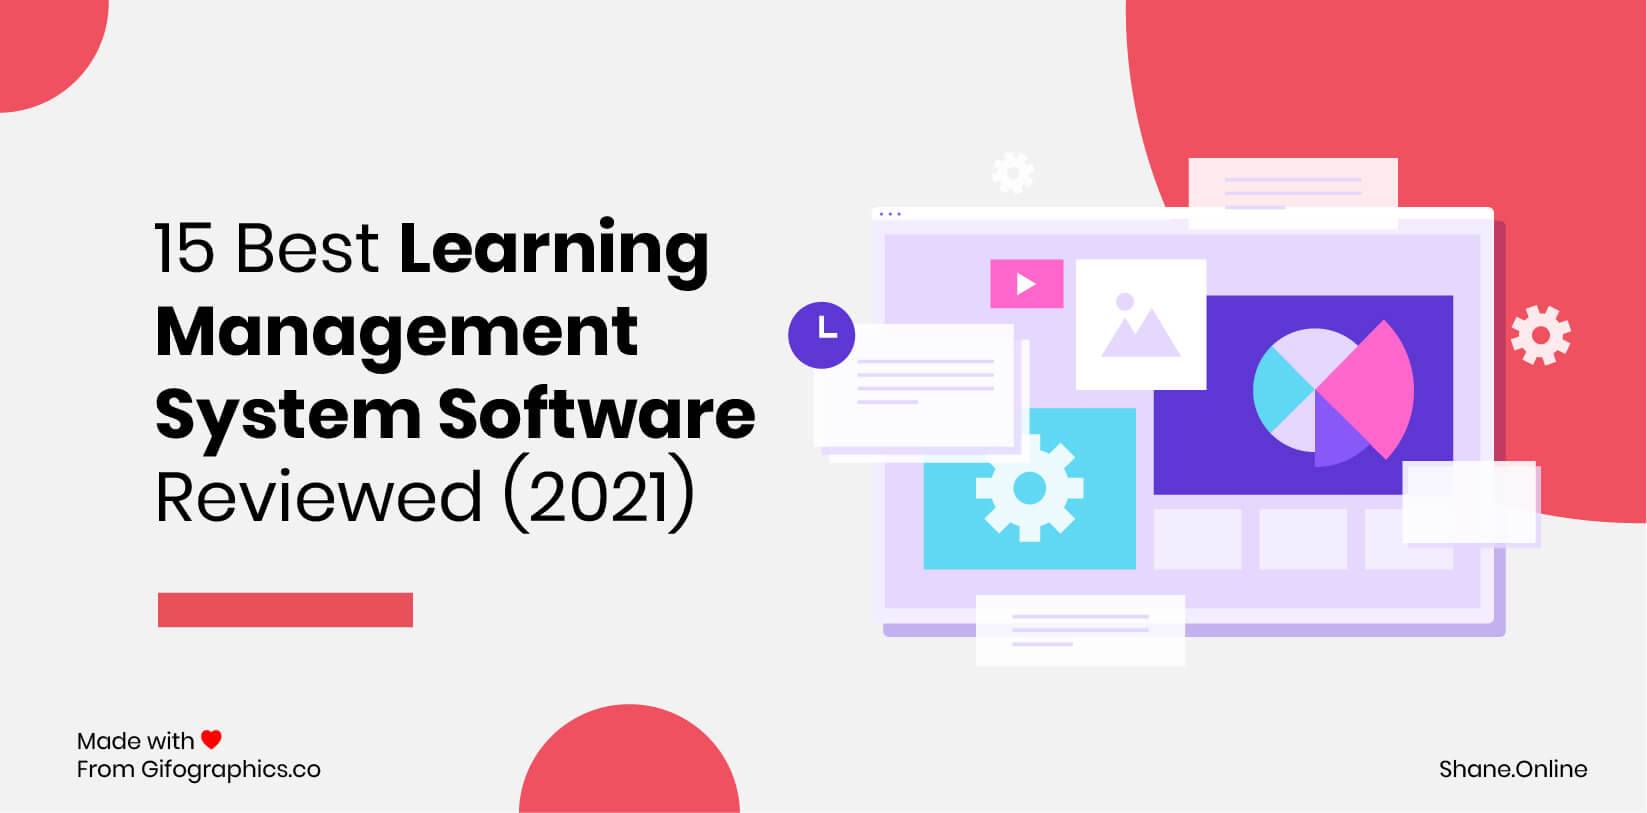 15 mejores software de sistemas de gestión de aprendizaje revisados ​​(2021)